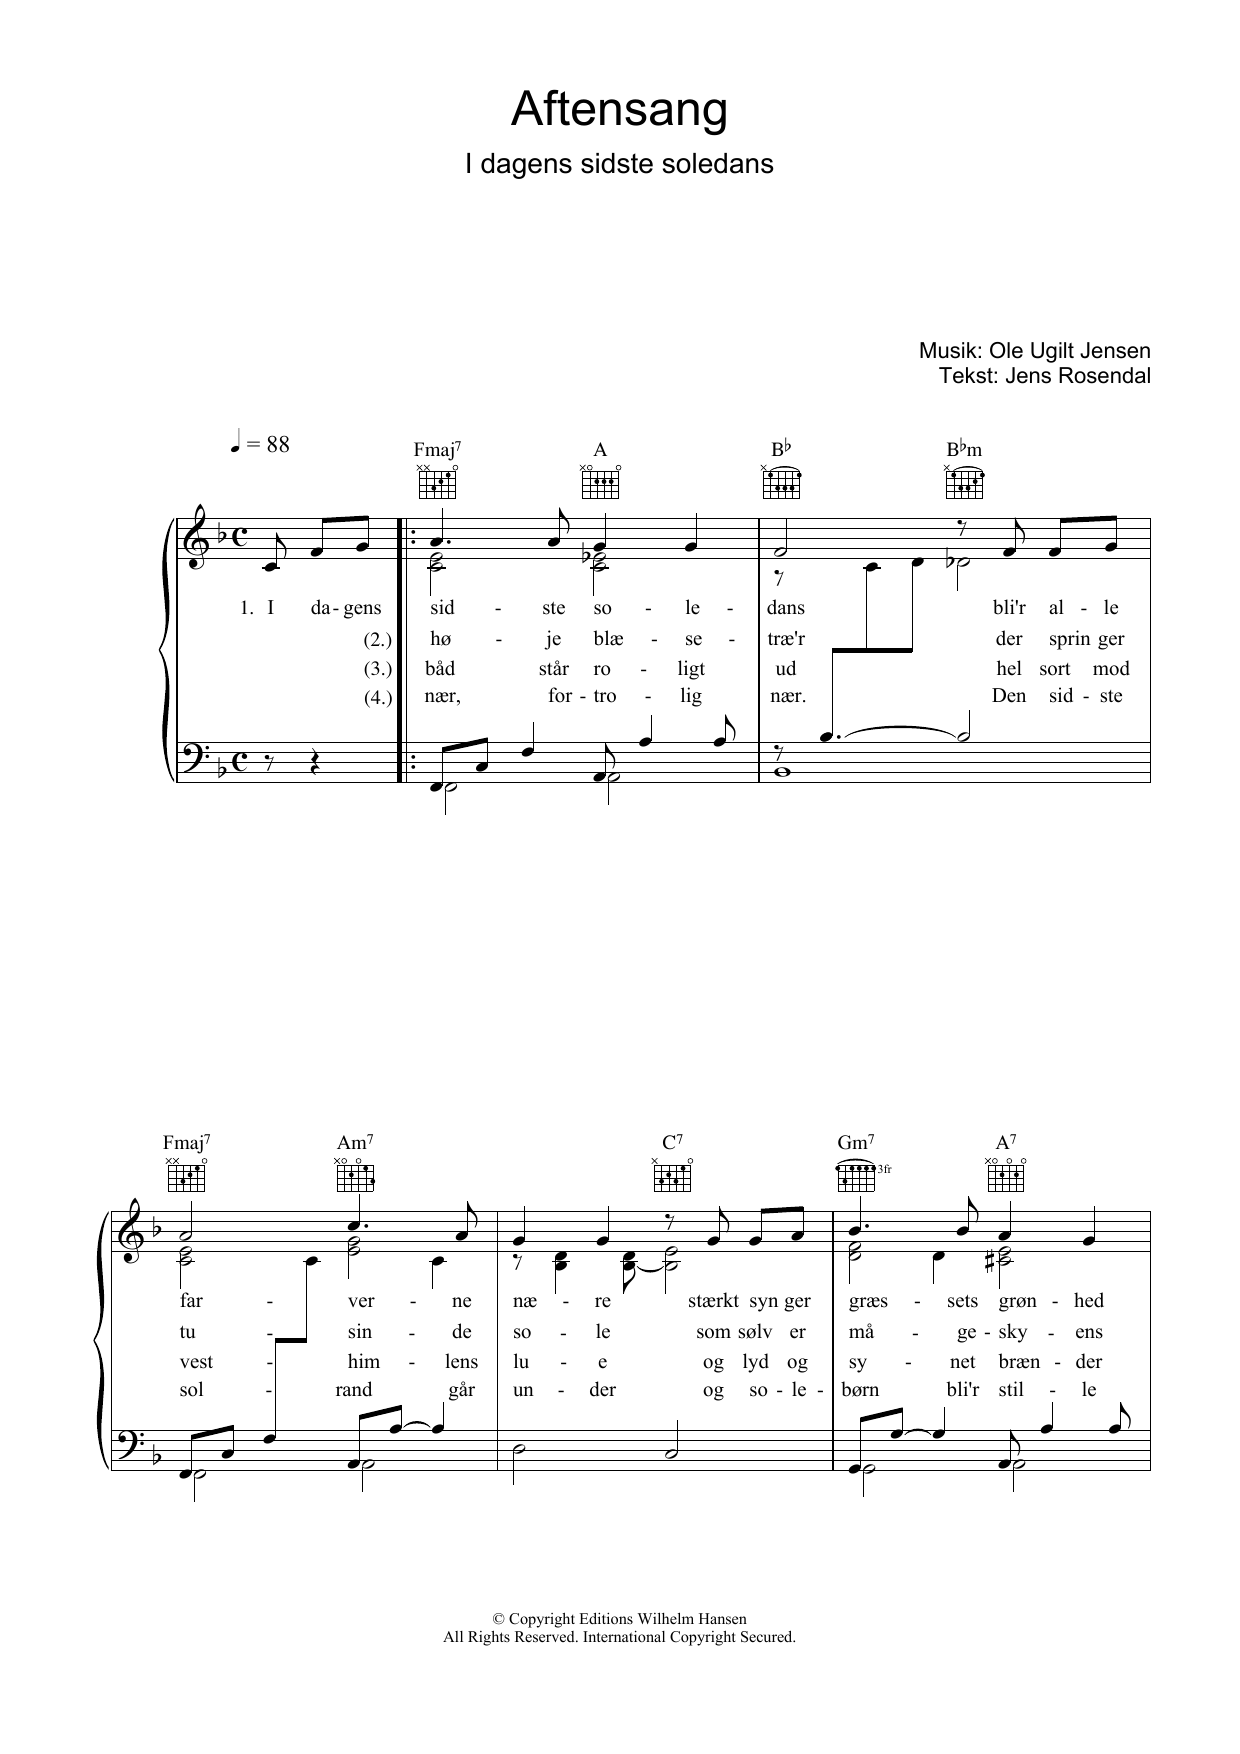 Ole Ugilt Jensen Aftensang I Dagens Sidste Soledans sheet music notes and chords. Download Printable PDF.